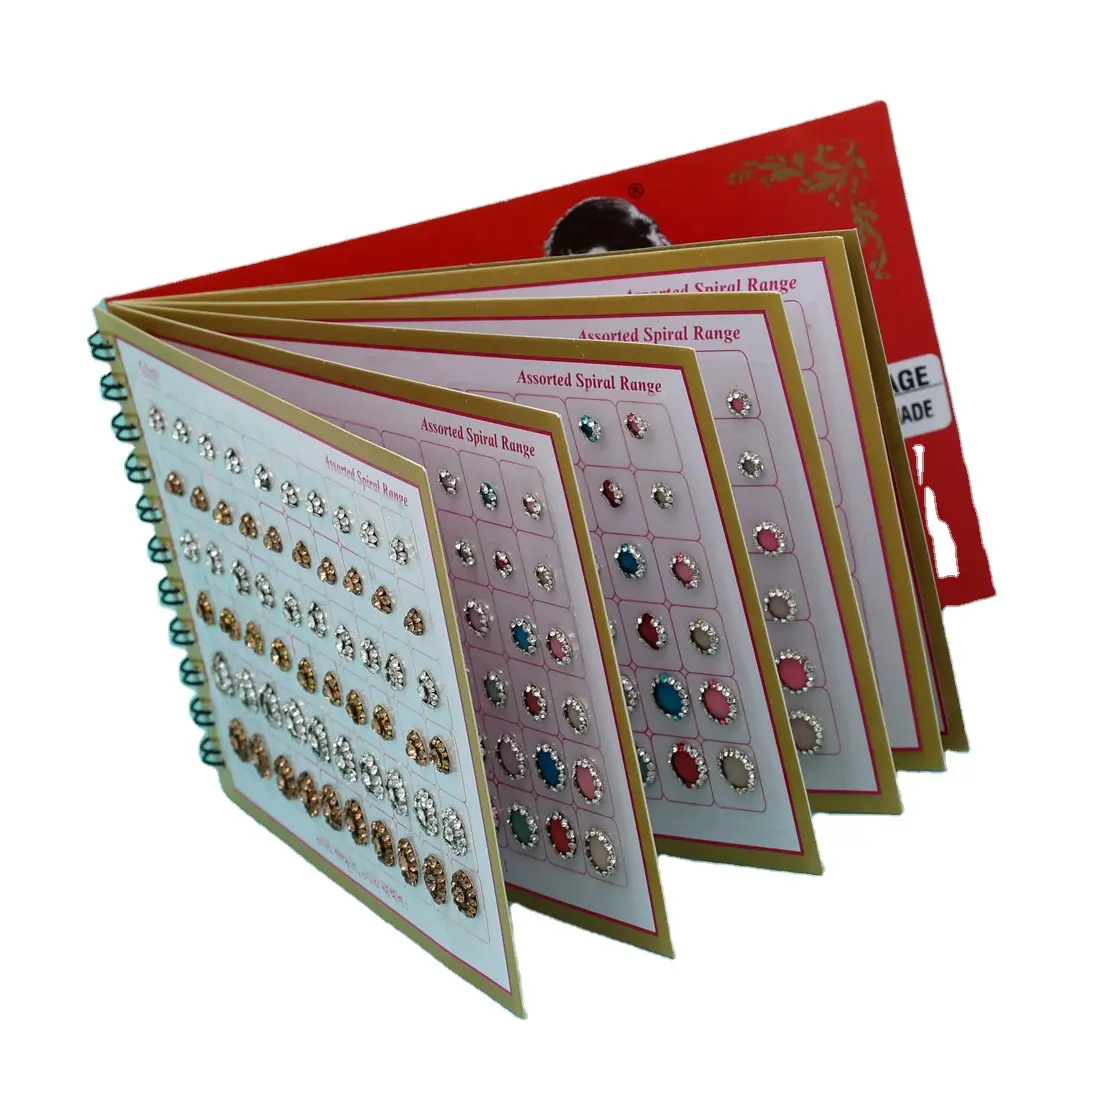 विवाहित महिलाओं और लड़कियों के लिए प्रीमियम गुणवत्ता वाली बिंदी बुकलेट्स का थोक संग्रह दैनिक उपयोग संग्रह के लिए स्टाइलिश